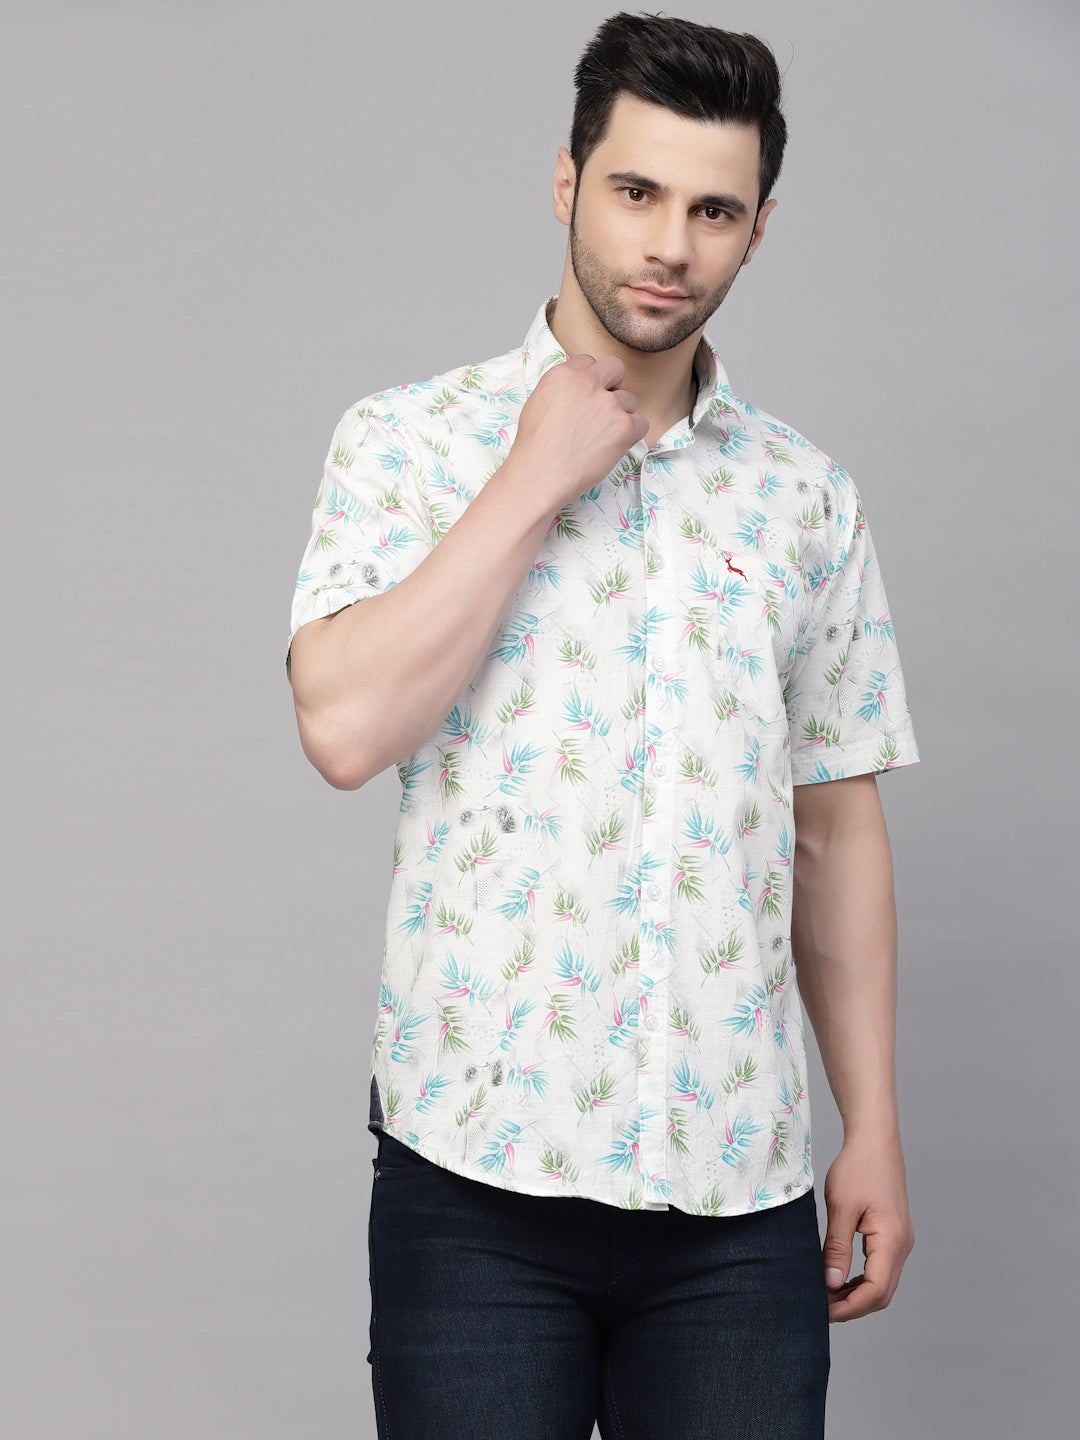 Valbone Men’s White & Blue Digital Leaves Printed Regular Fit Casual Shirt Half Sleeves